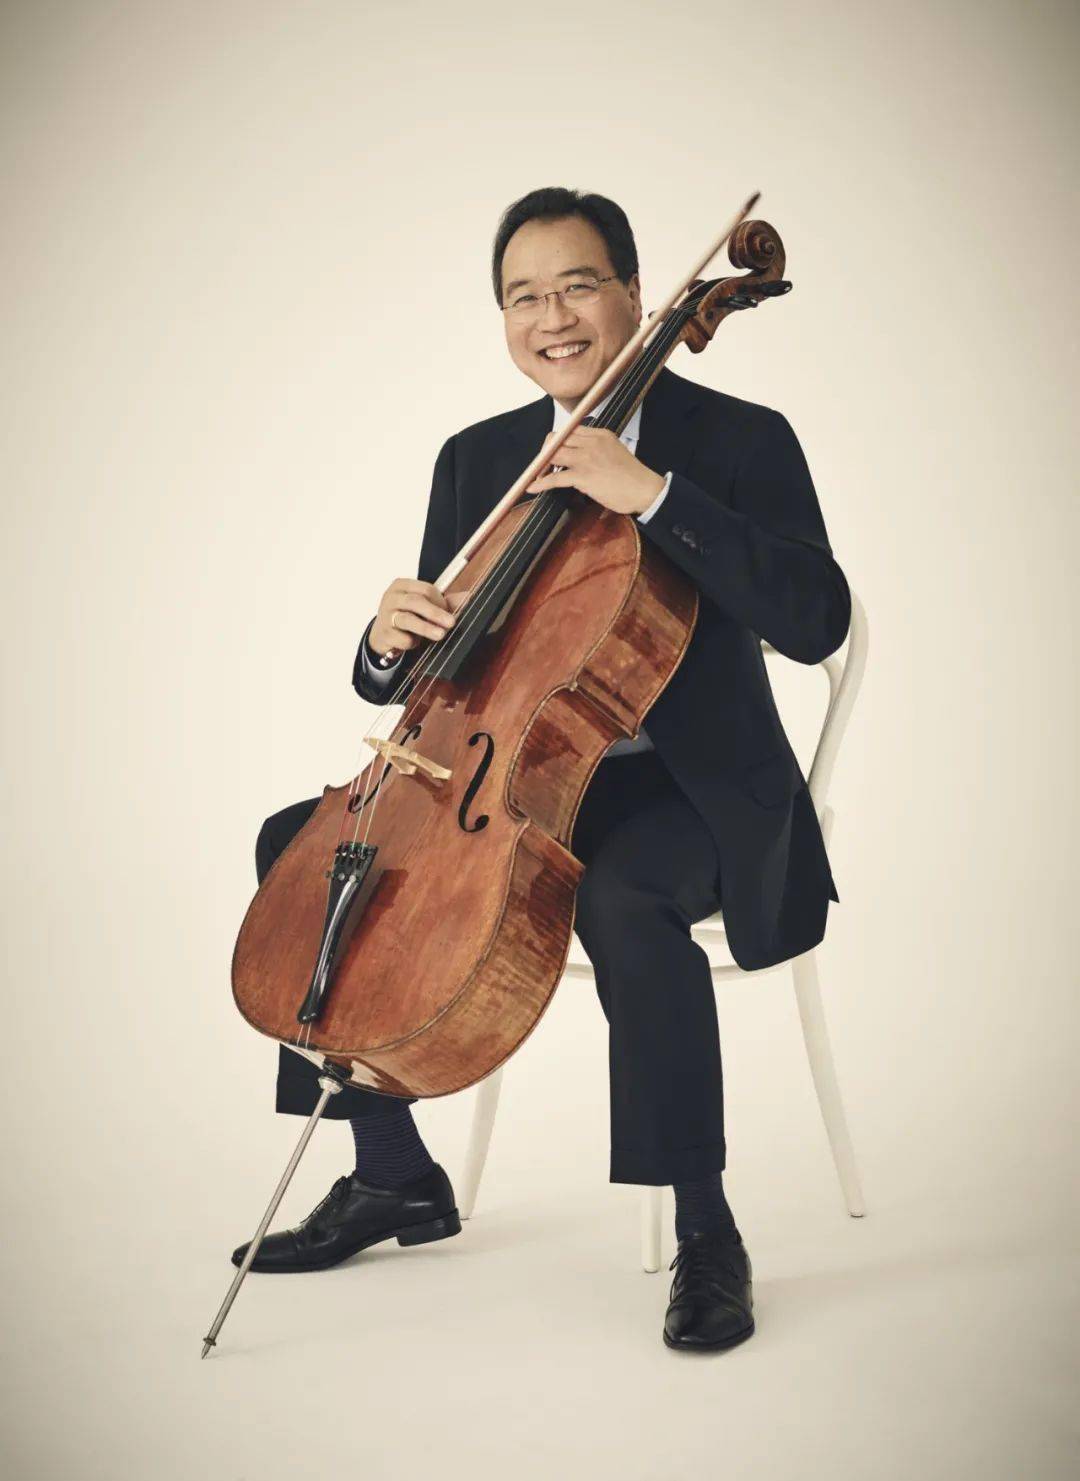 董潇（青年大提琴演奏家）中国音乐网百科 - 个人百科 - 中国音乐网